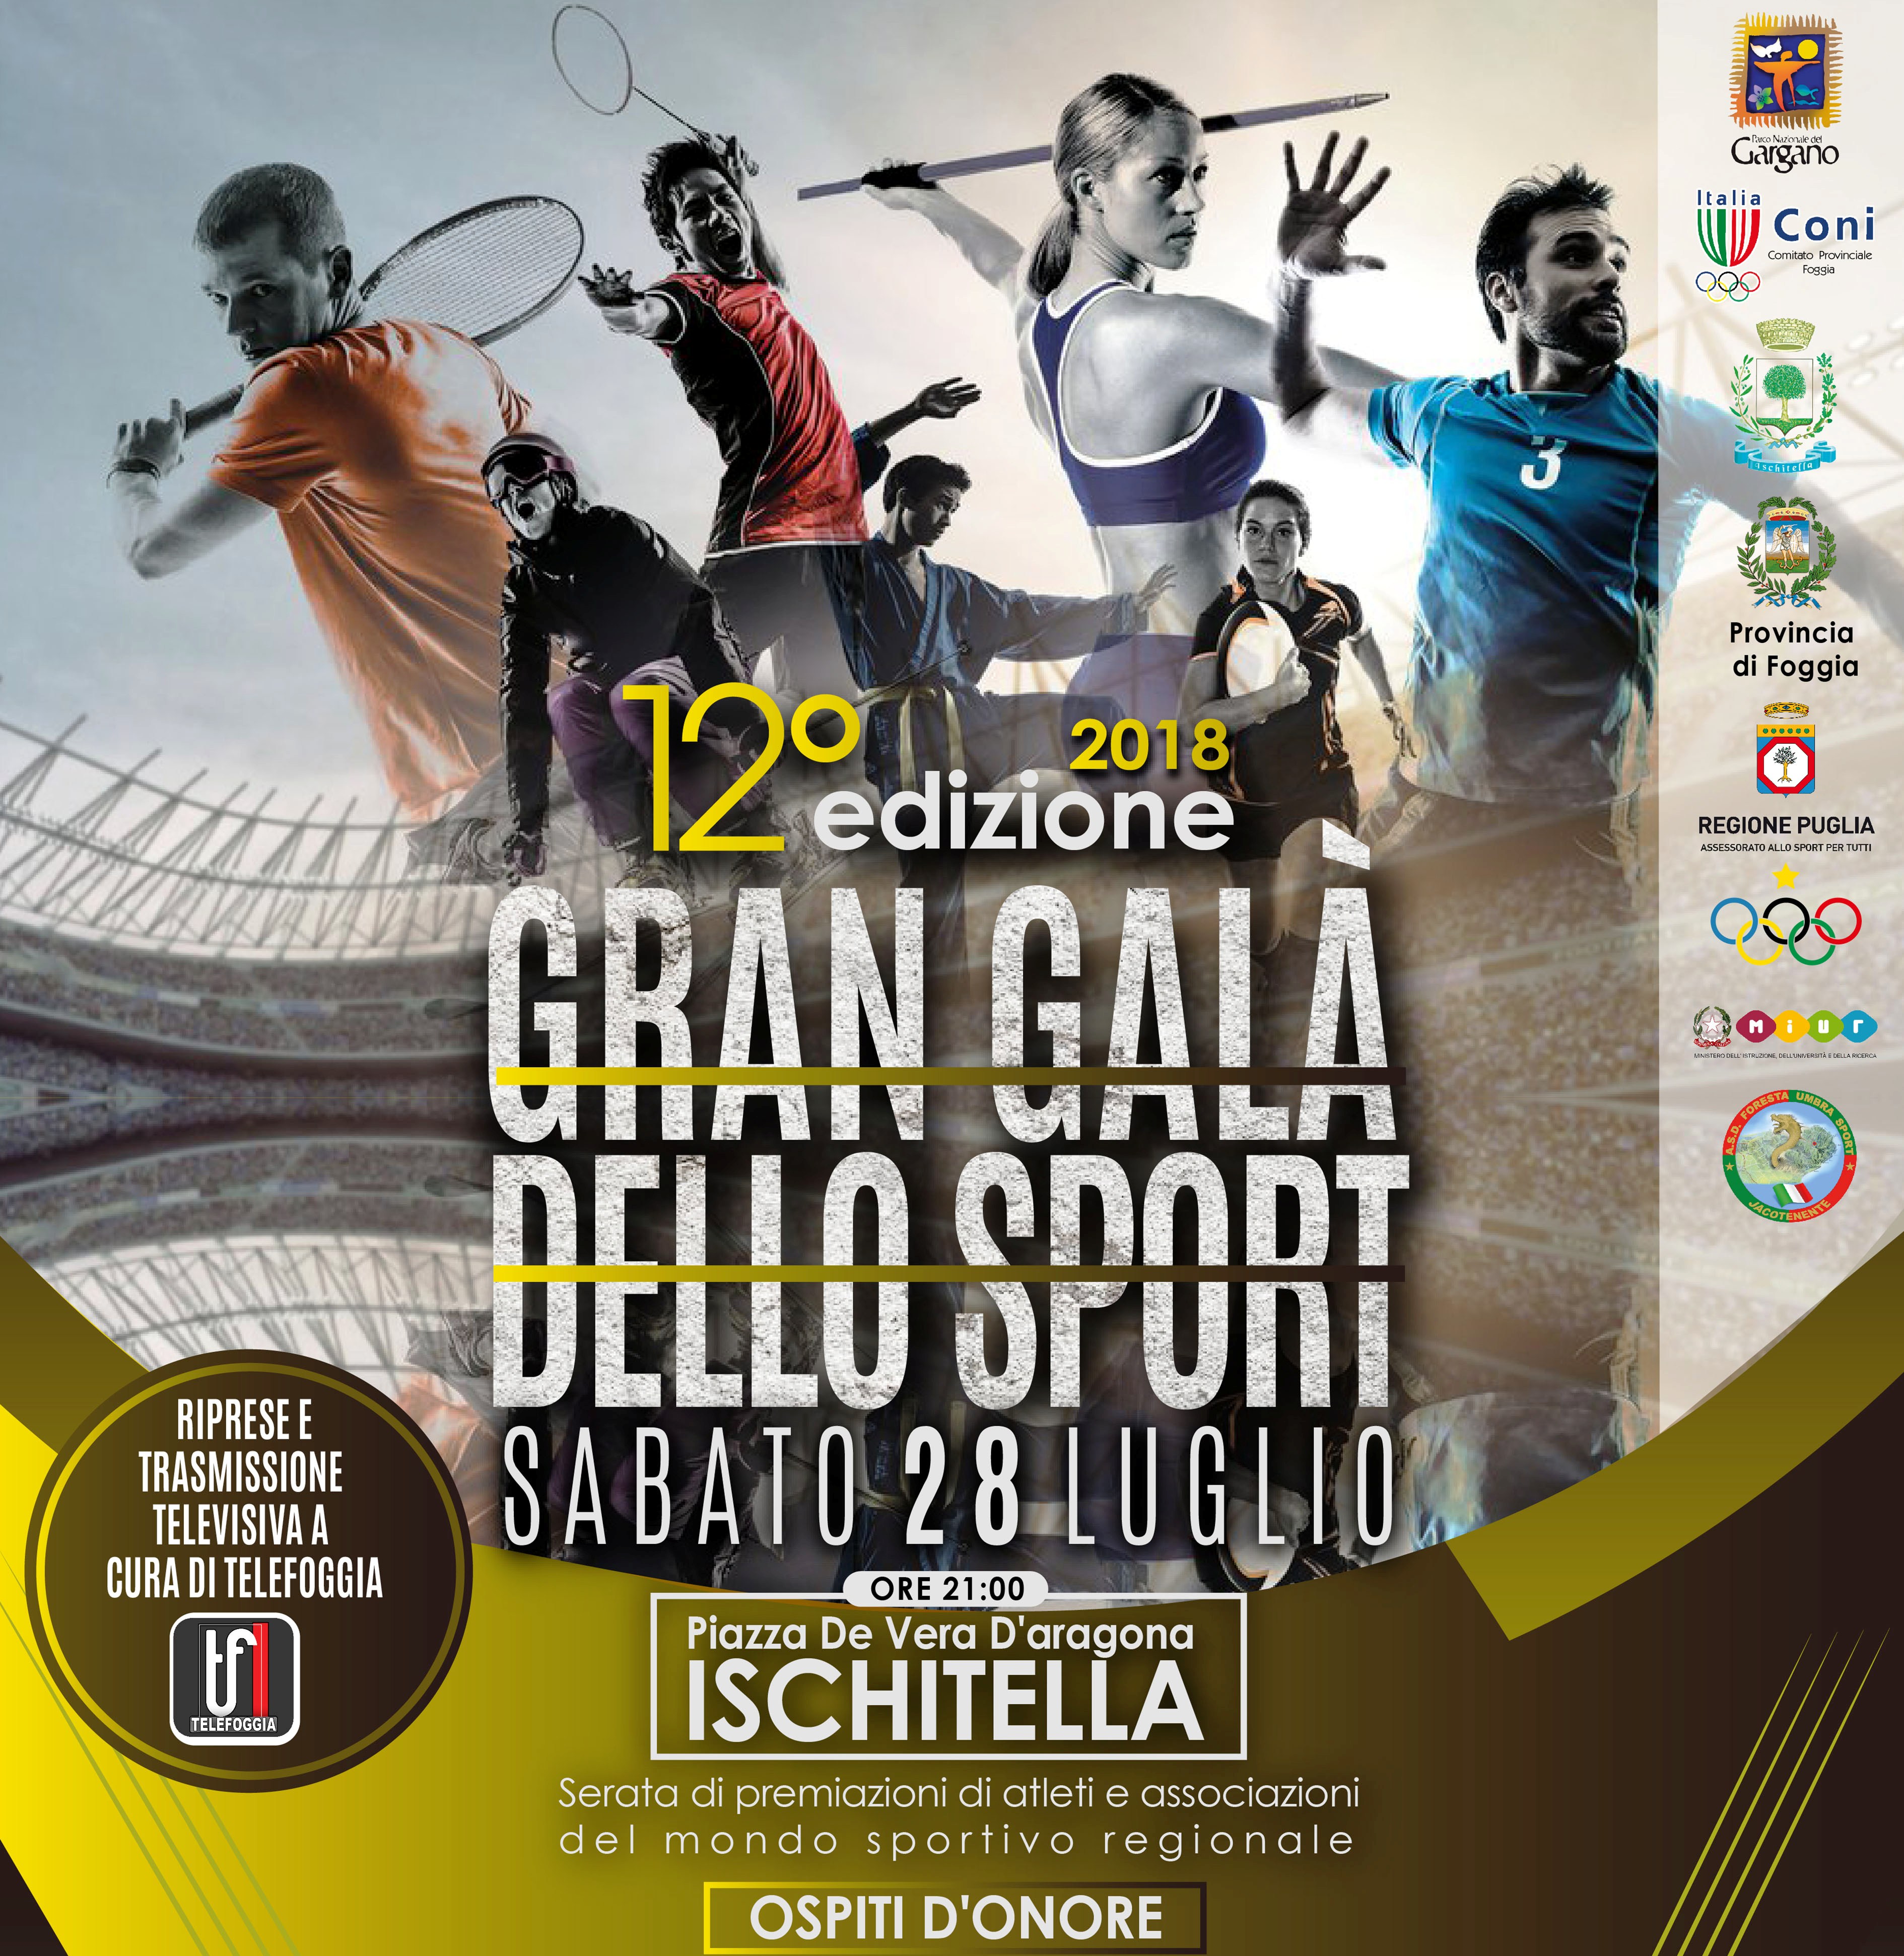 Ad Ischitella il 28 luglio la 12esima edizione del “Galà dello Sport”. Ancora tanti olimpionici!